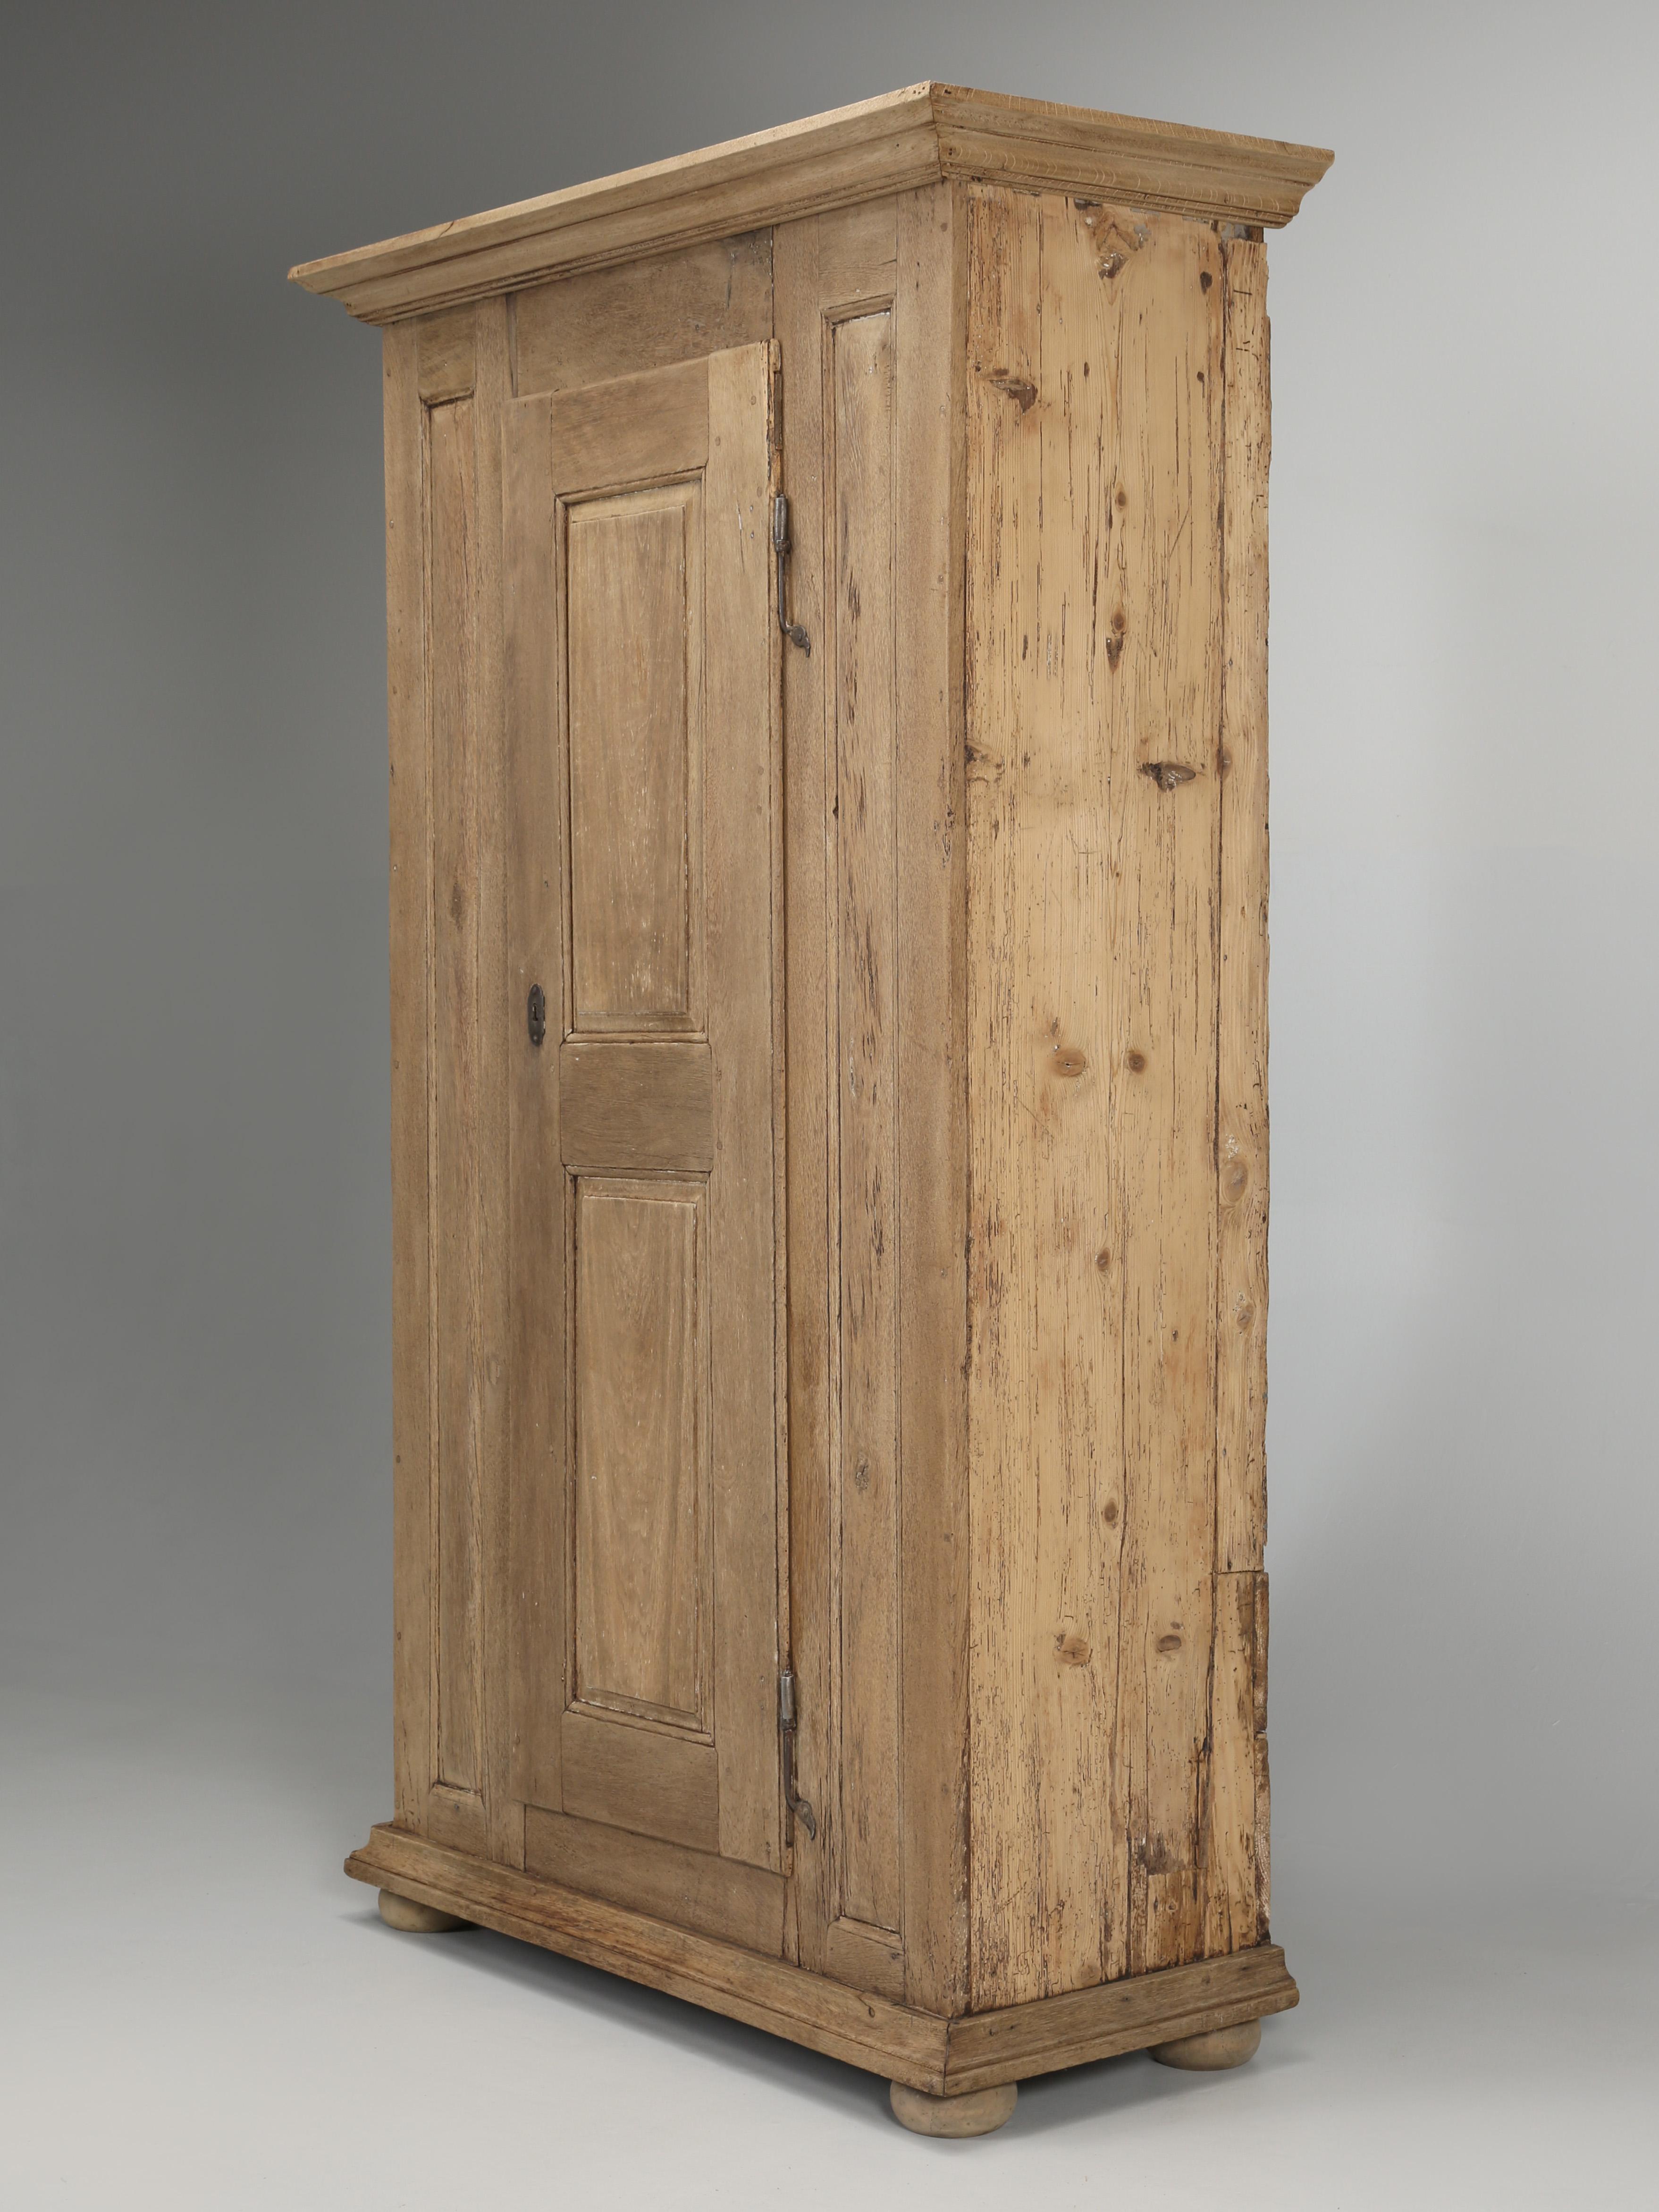 Fin du XVIIIe siècle Ancienne armoire française Bonnetière à une porte en chêne lavé naturel, C1700's